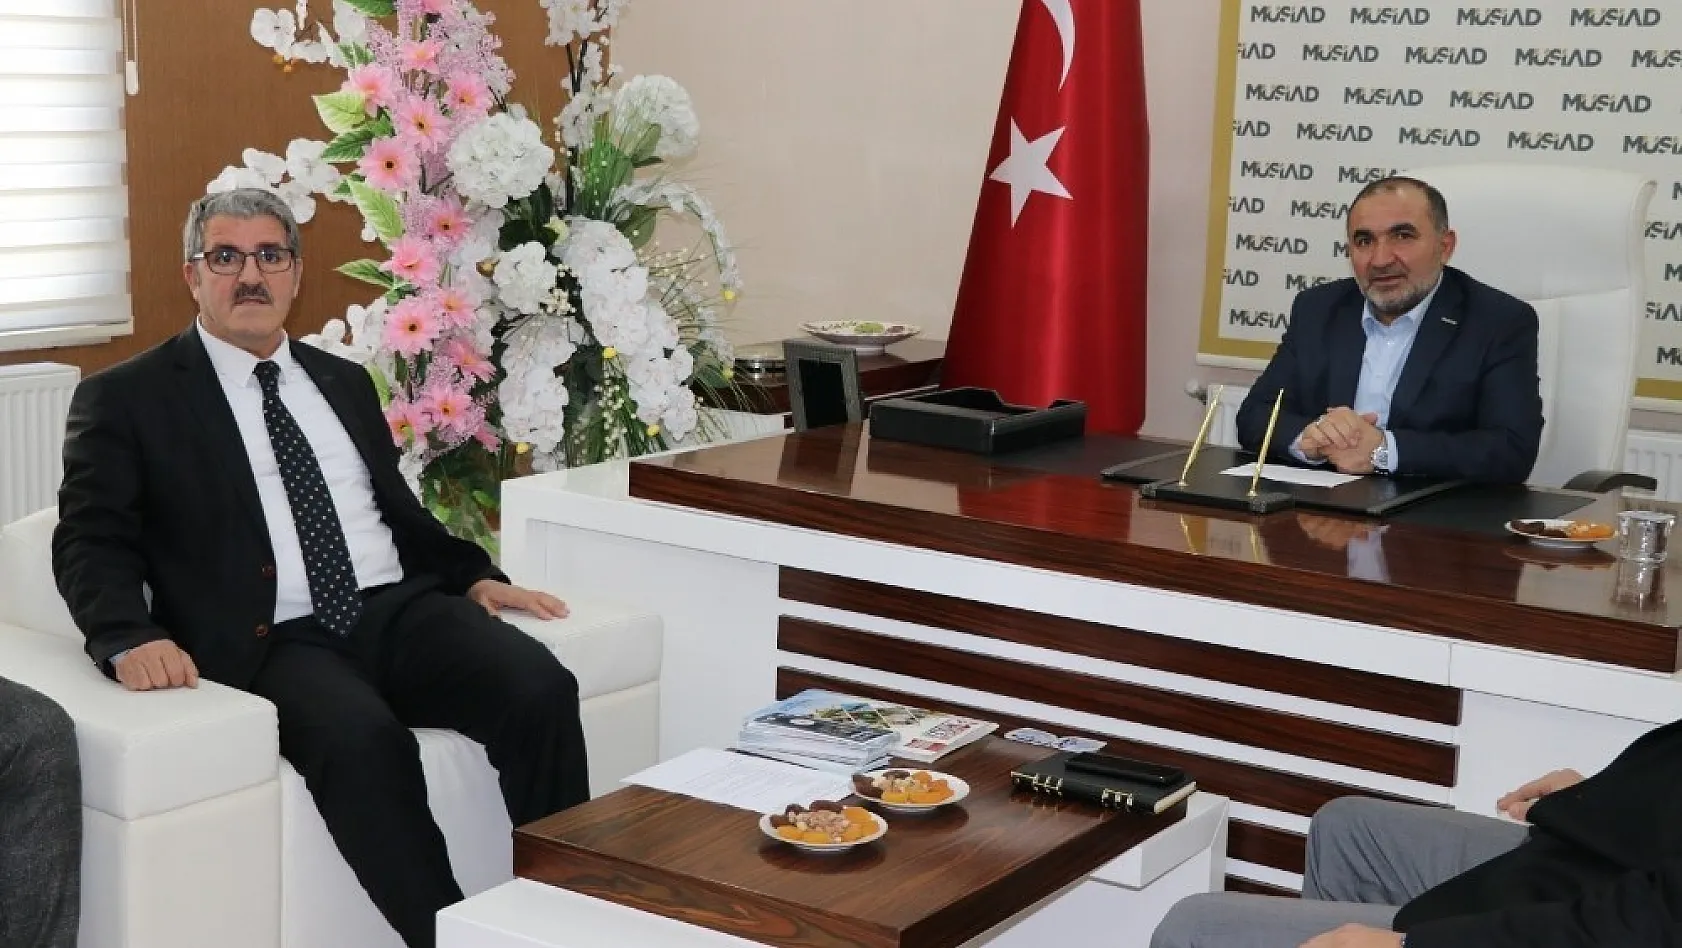 MÜSİAD Başkanı Poyraz'a 'Hayırlı olsun' ziyaretleri 